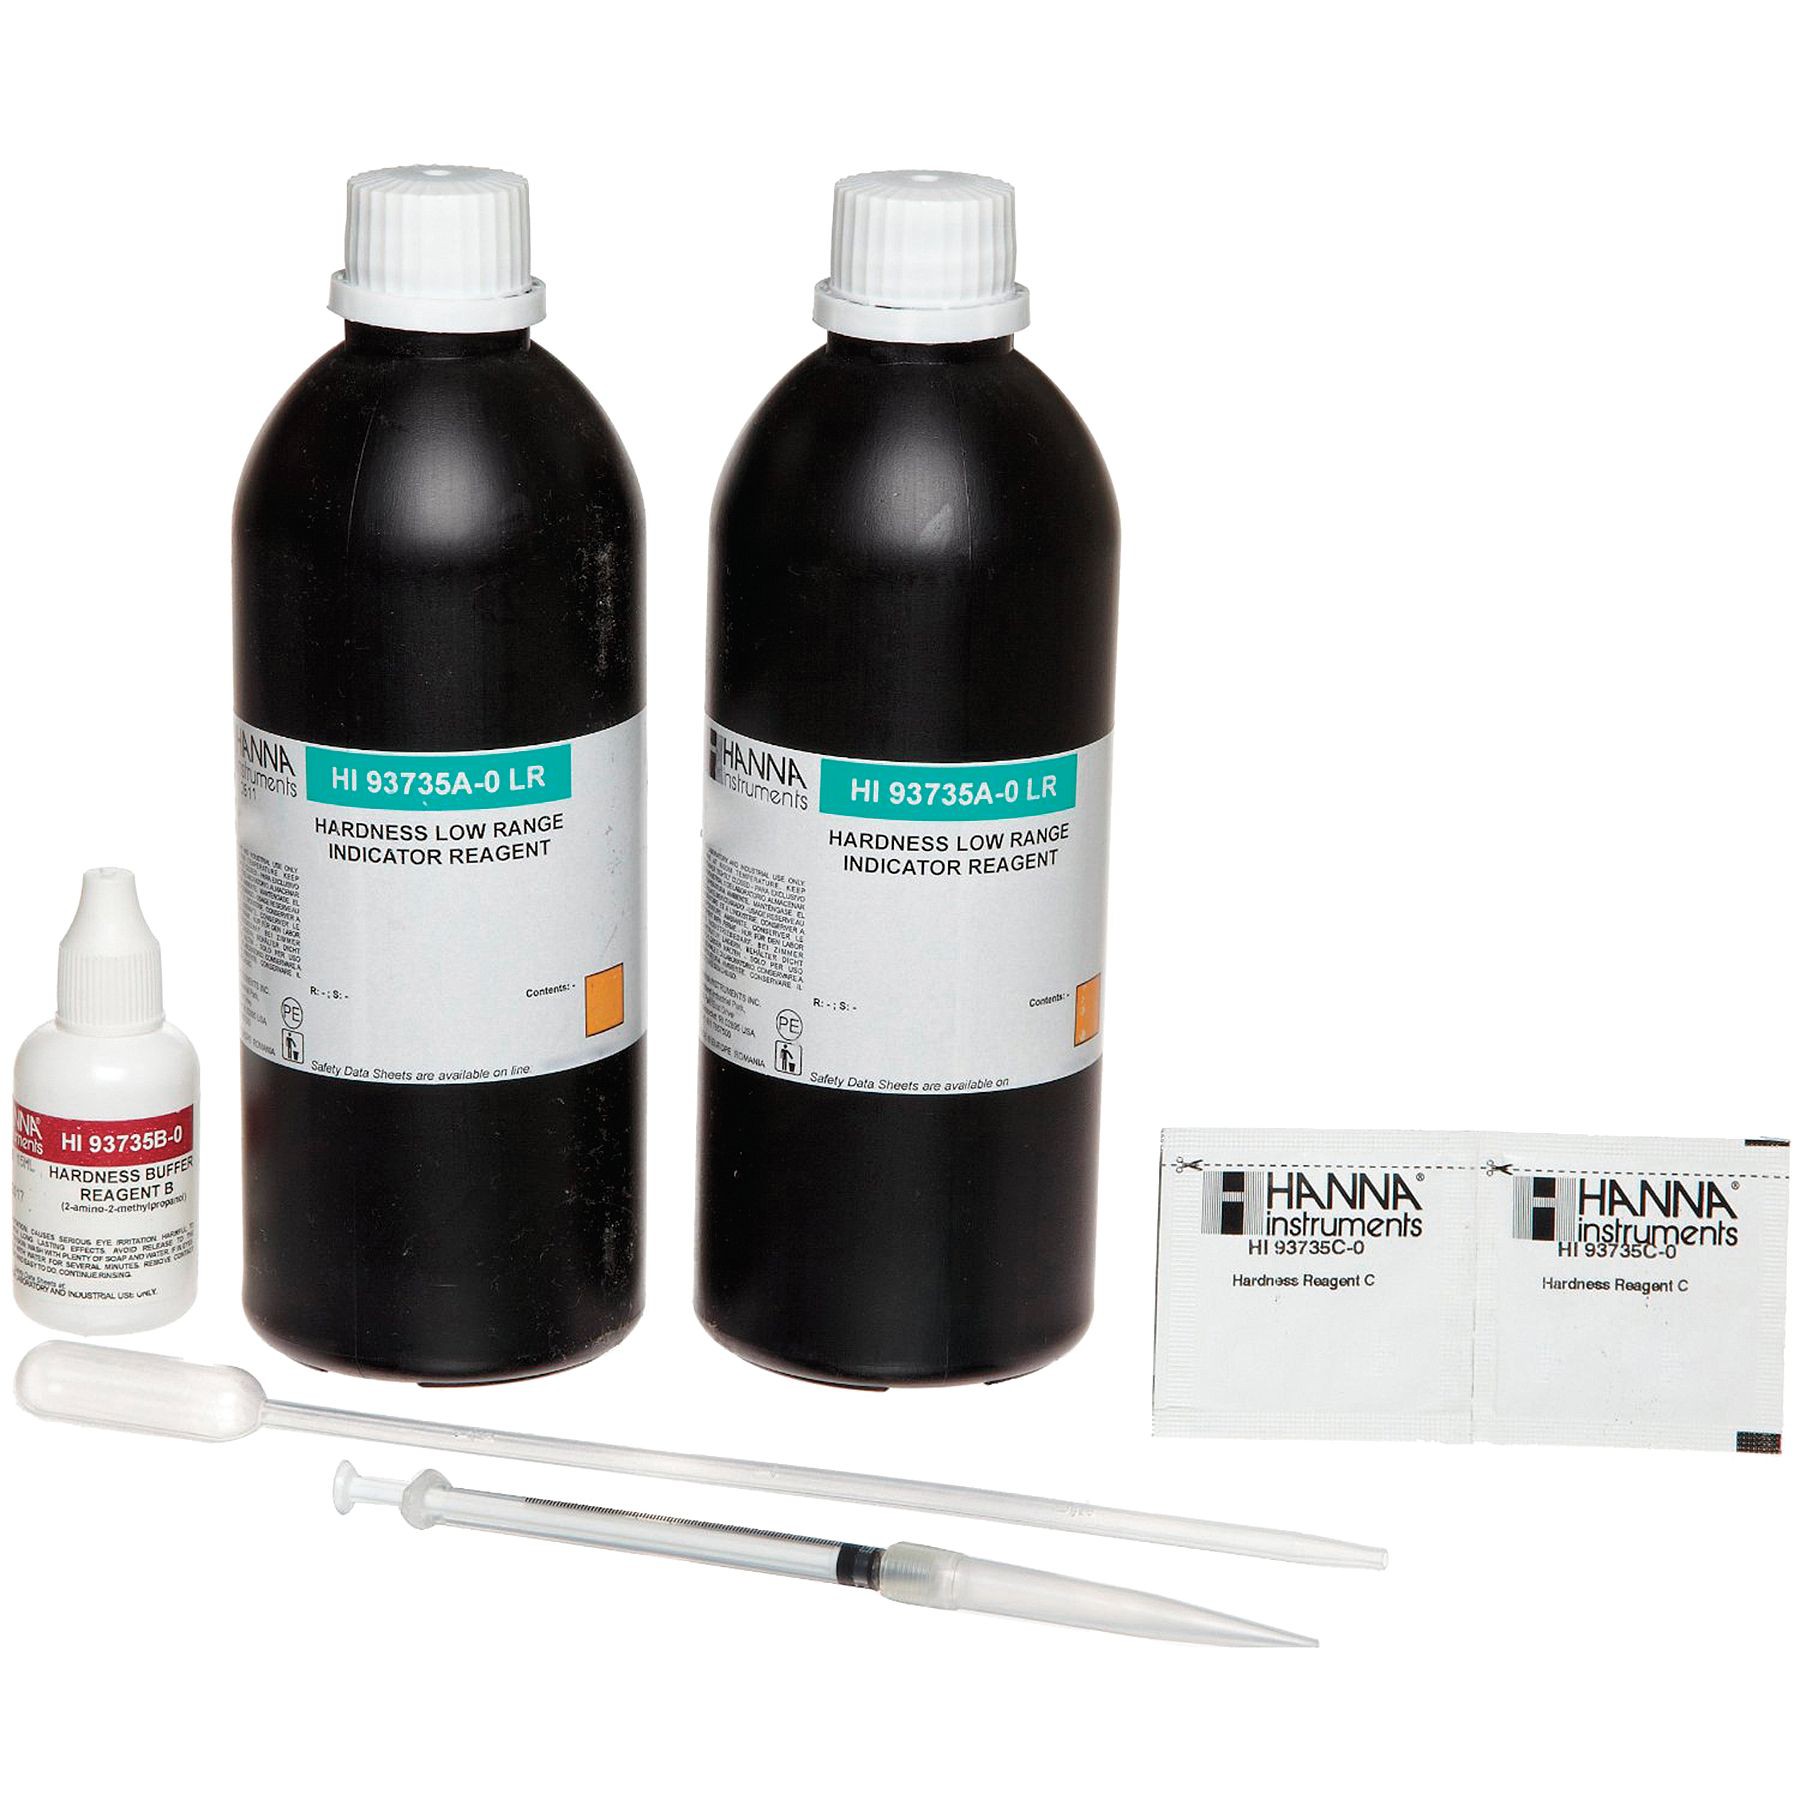 Thuốc thử độ cứng tổng MR 200 - 500 mg/L, 100 lần HI93735-01